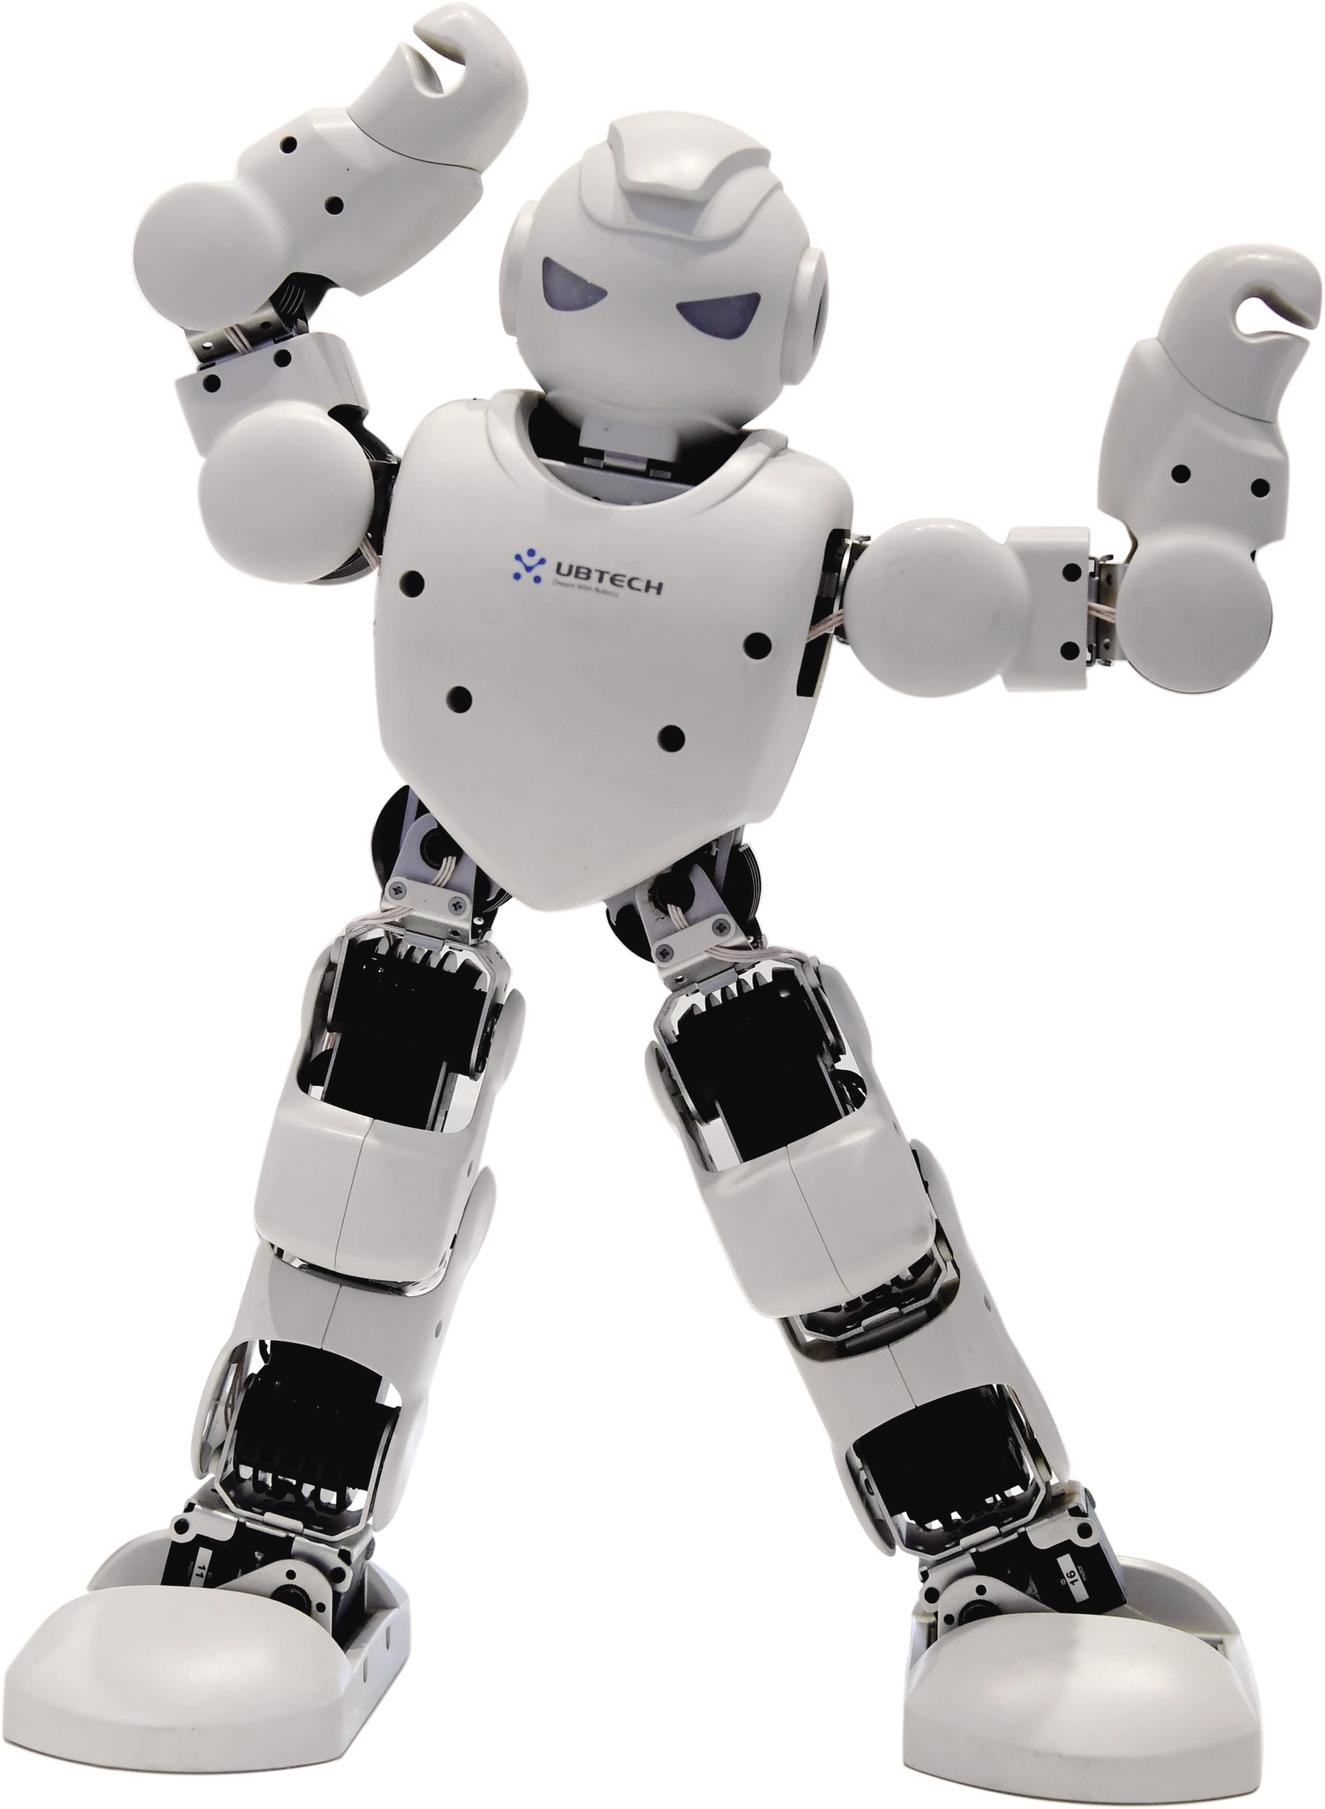 哈工大机器人合肥研究院展示的类人智能机器人